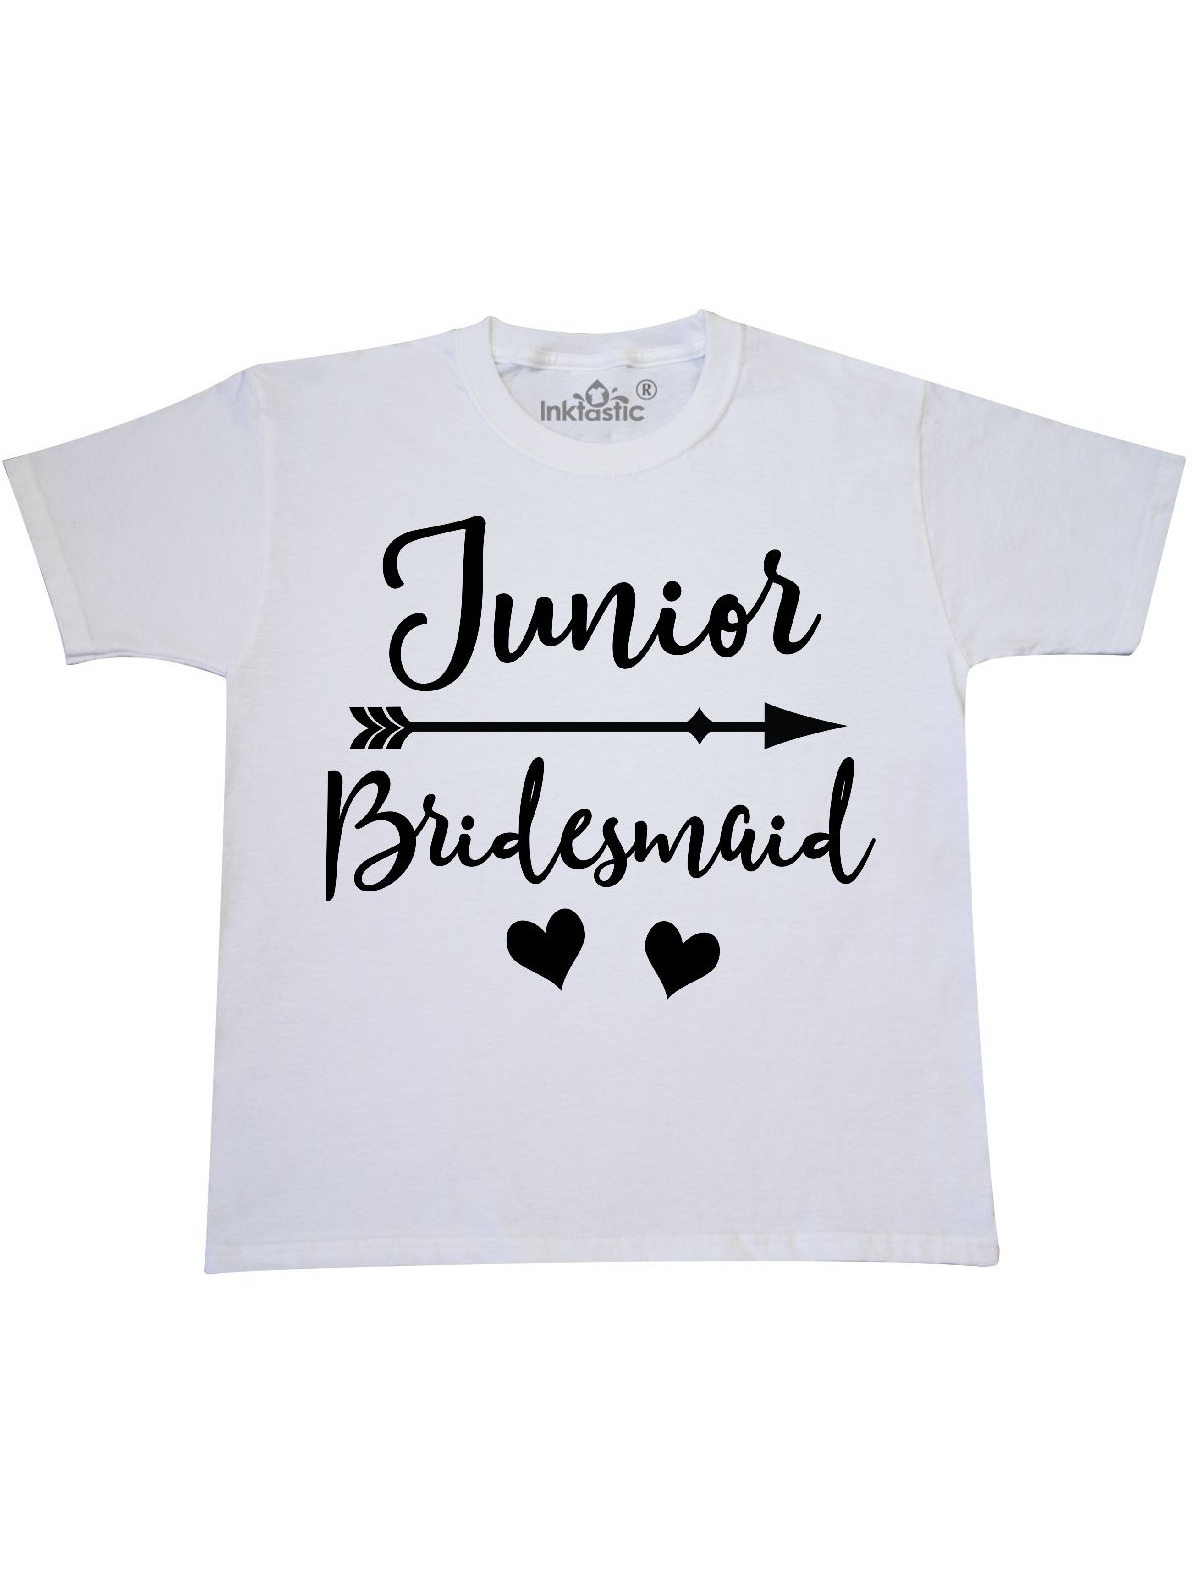 jr bridesmaid shirt